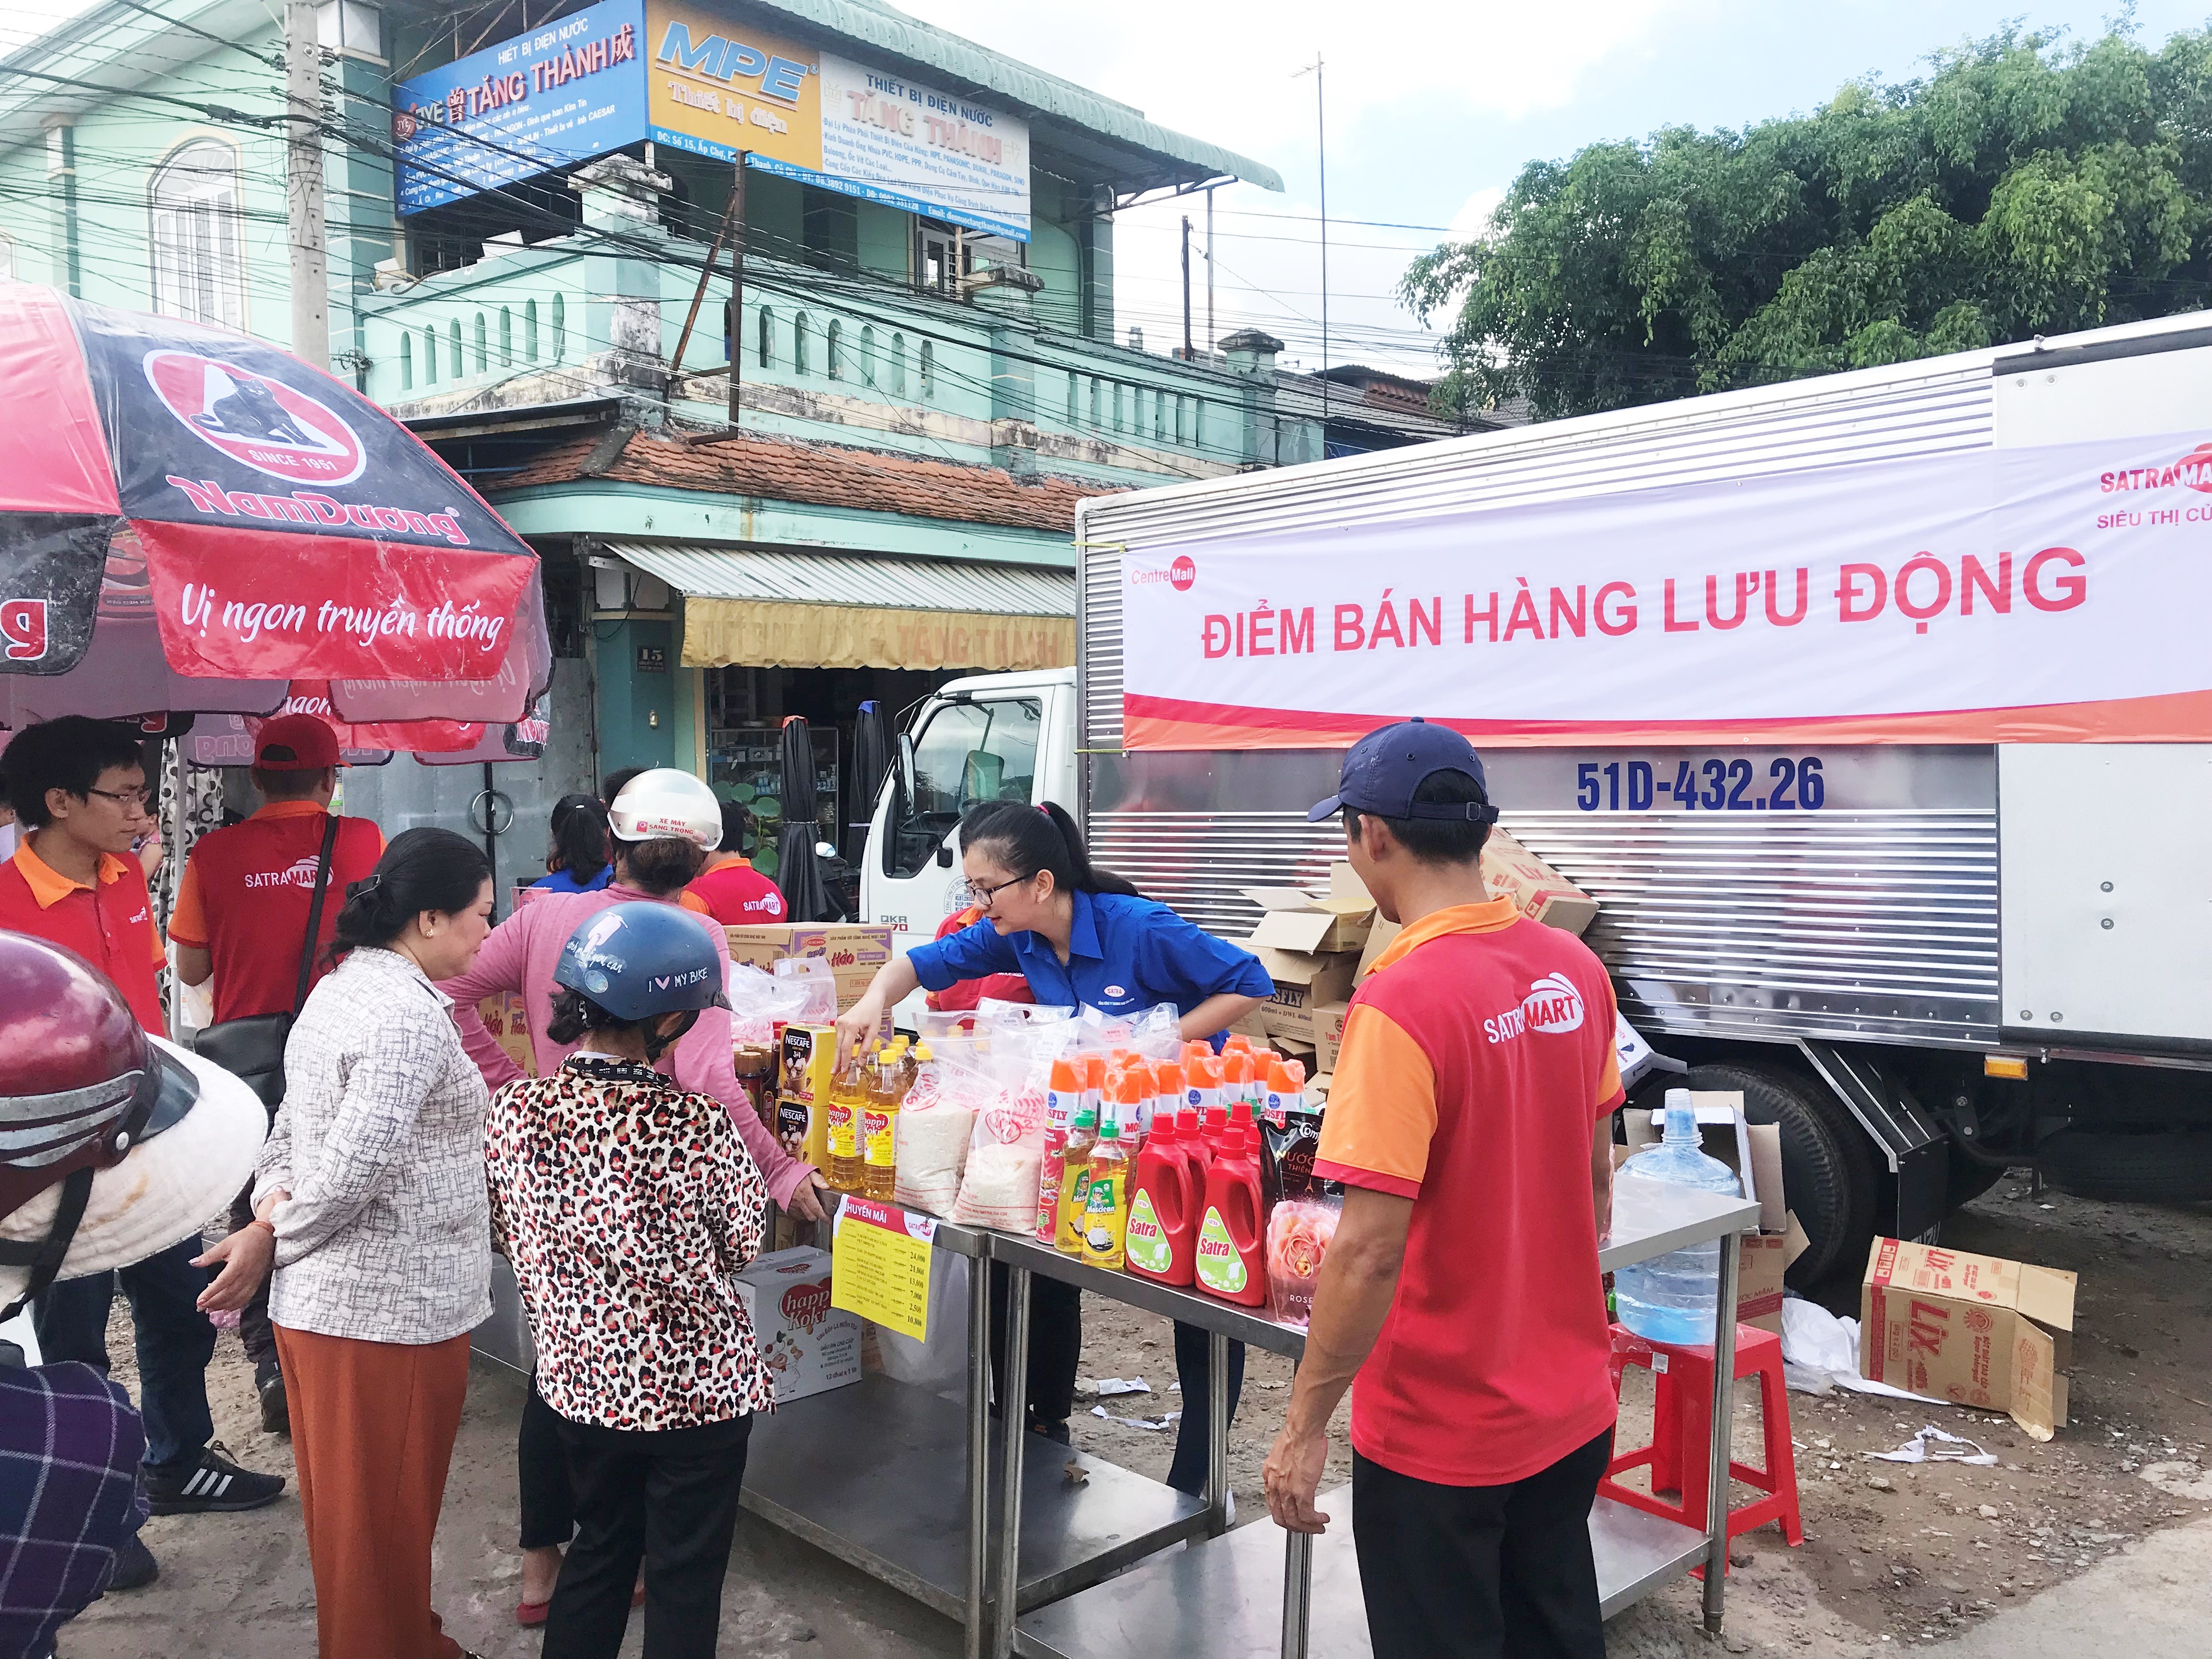 SatraMart Củ Chi triển khai bán hàng lưu động tại xã Phước Thạnh, huyện Củ Chi